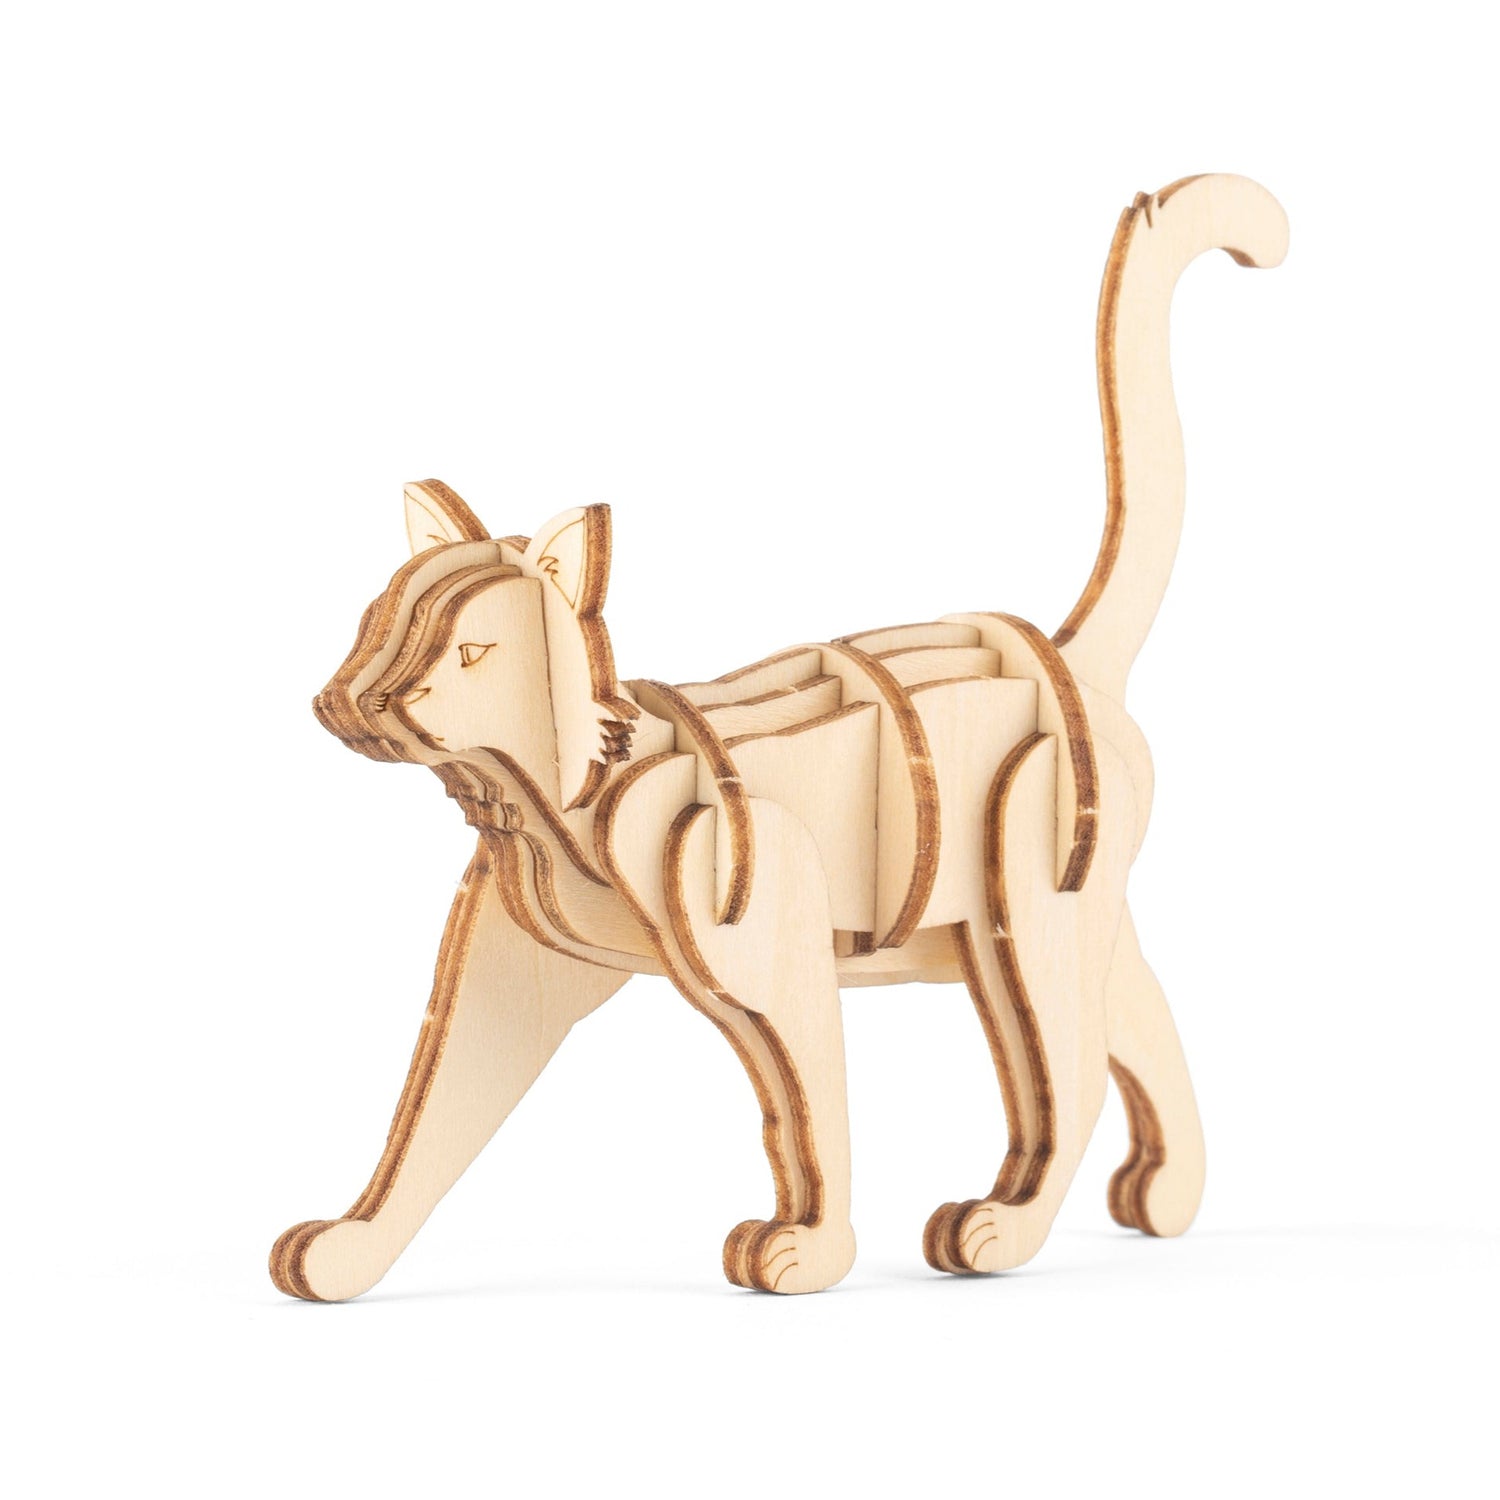 Cat 3D Wooden Puzzle – Kikkerland Design Inc